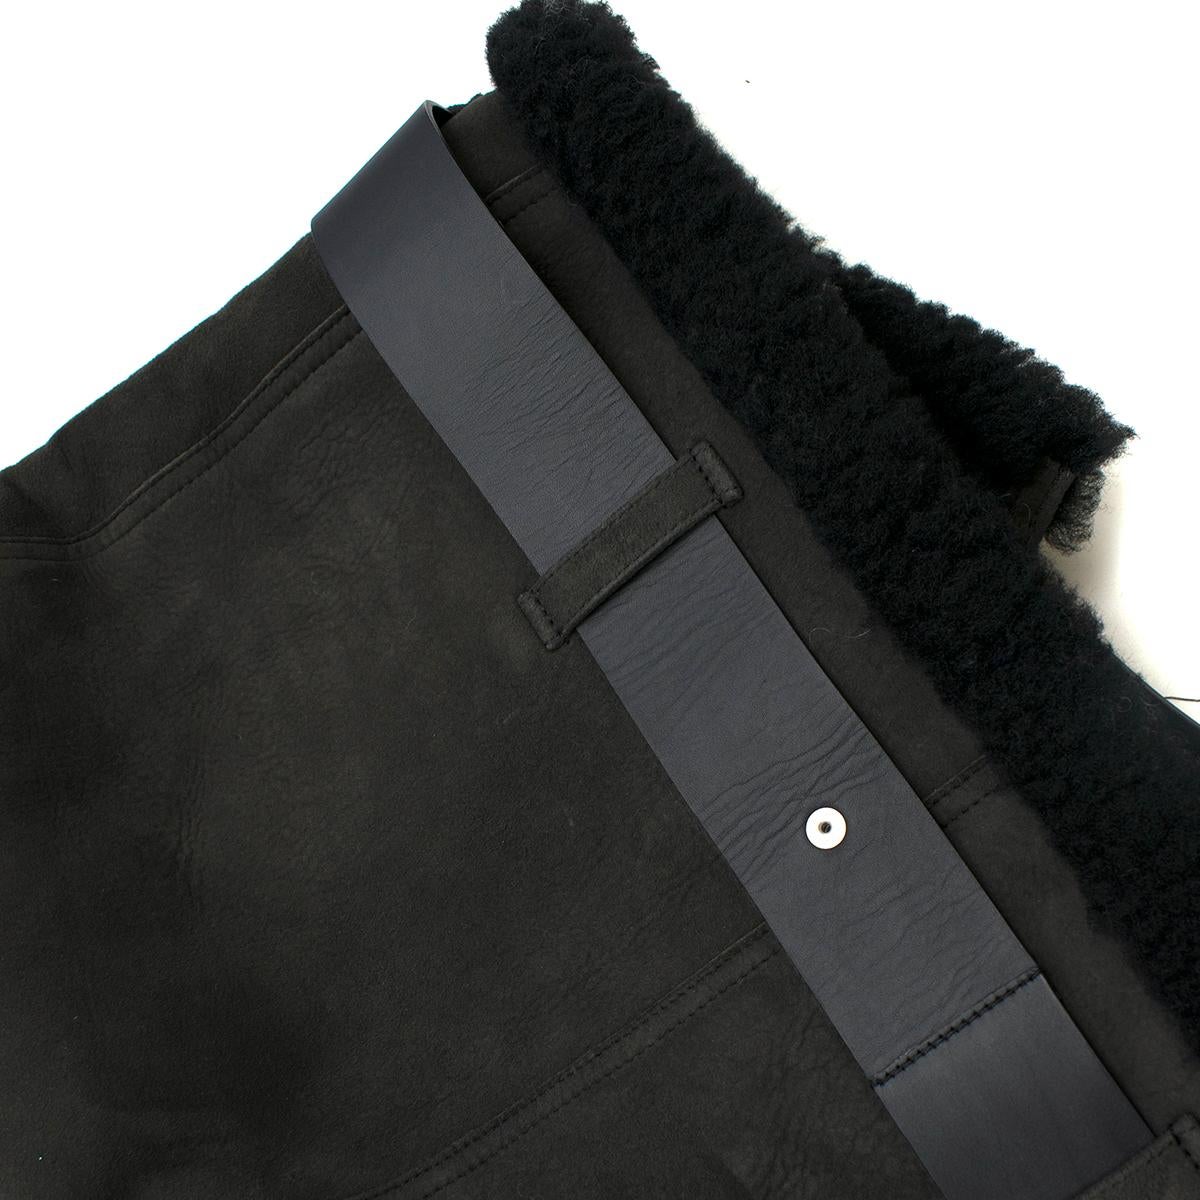 Acne Studios Velocite Suede Jacket in Dark Grey & Black 36 3